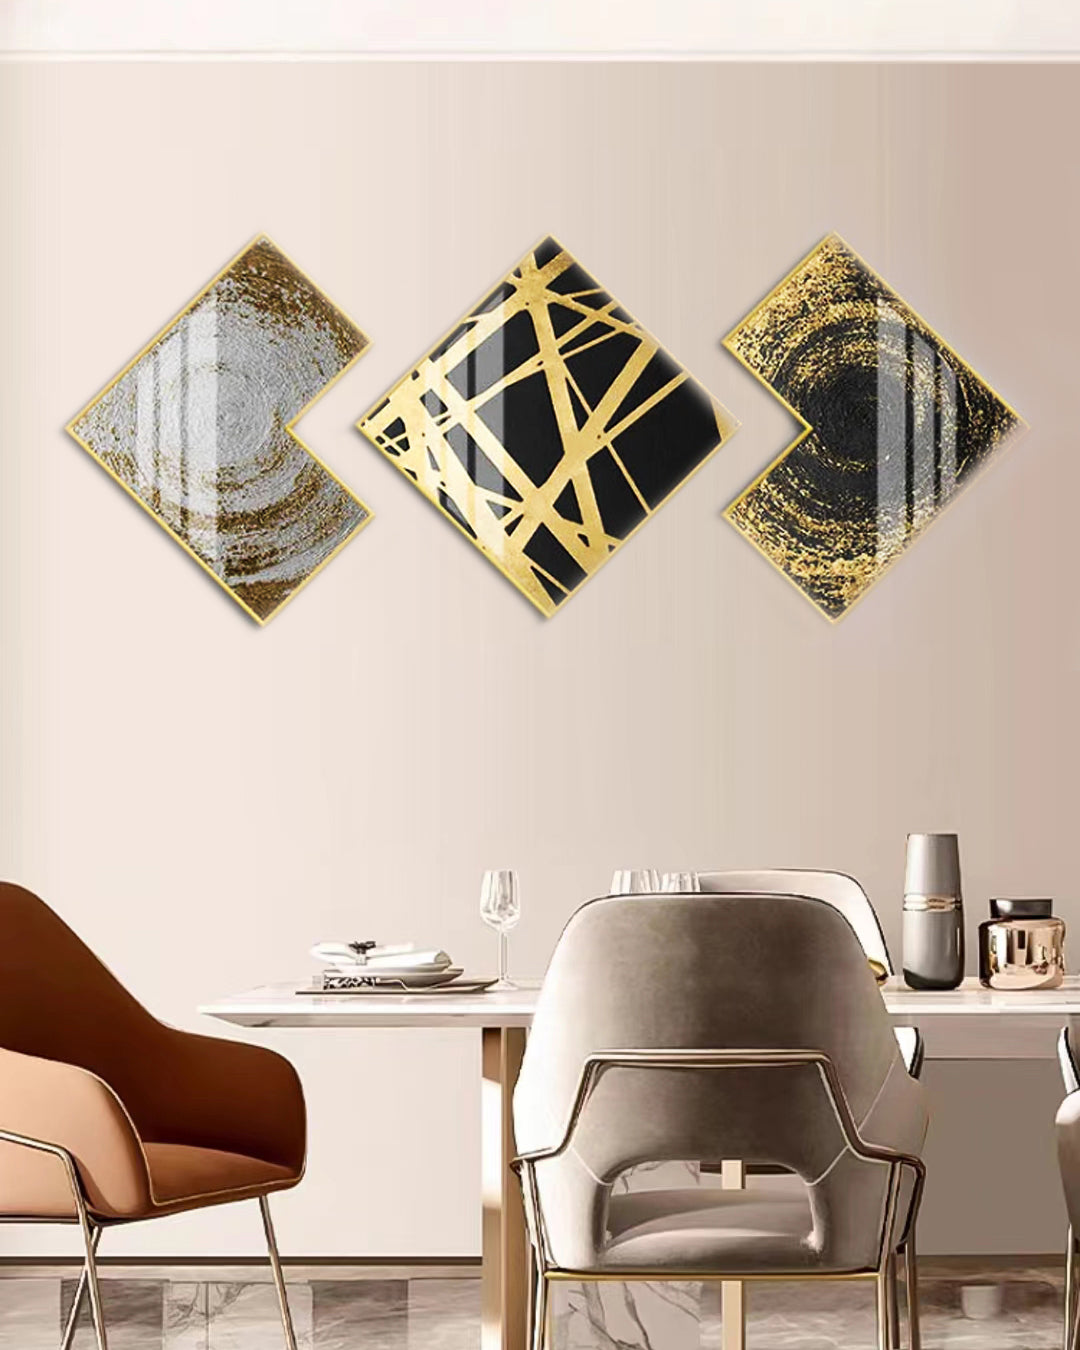 لوحة حائط باللونين الأسود والذهبي (50x50 سم - مجموعة من 3 قطع)